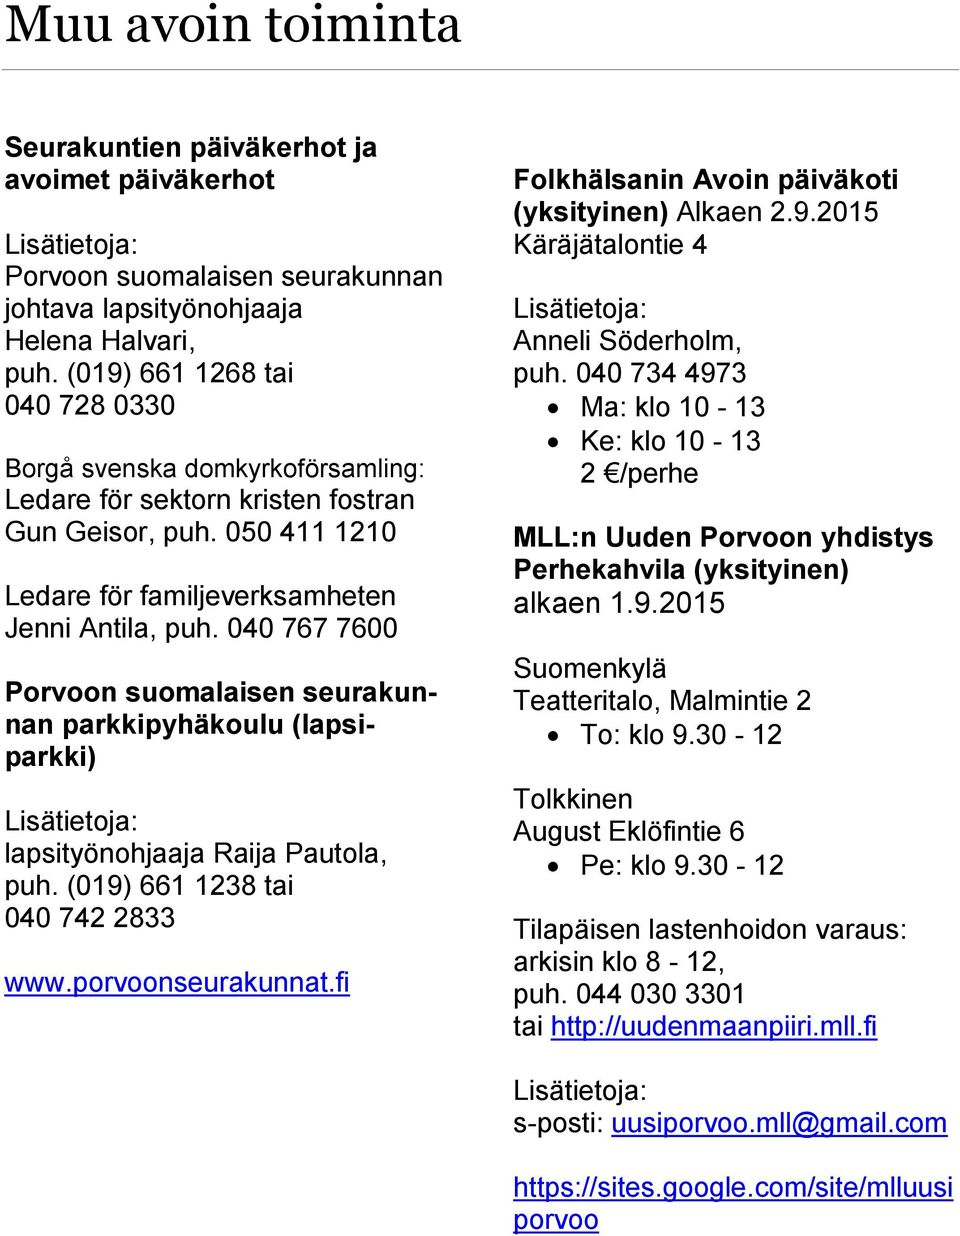 040 767 7600 Porvoon suomalaisen seurakunnan parkkipyhäkoulu (lapsiparkki) Lisätietoja: lapsityönohjaaja Raija Pautola, puh. (019) 661 1238 tai 040 742 2833 www.porvoonseurakunnat.